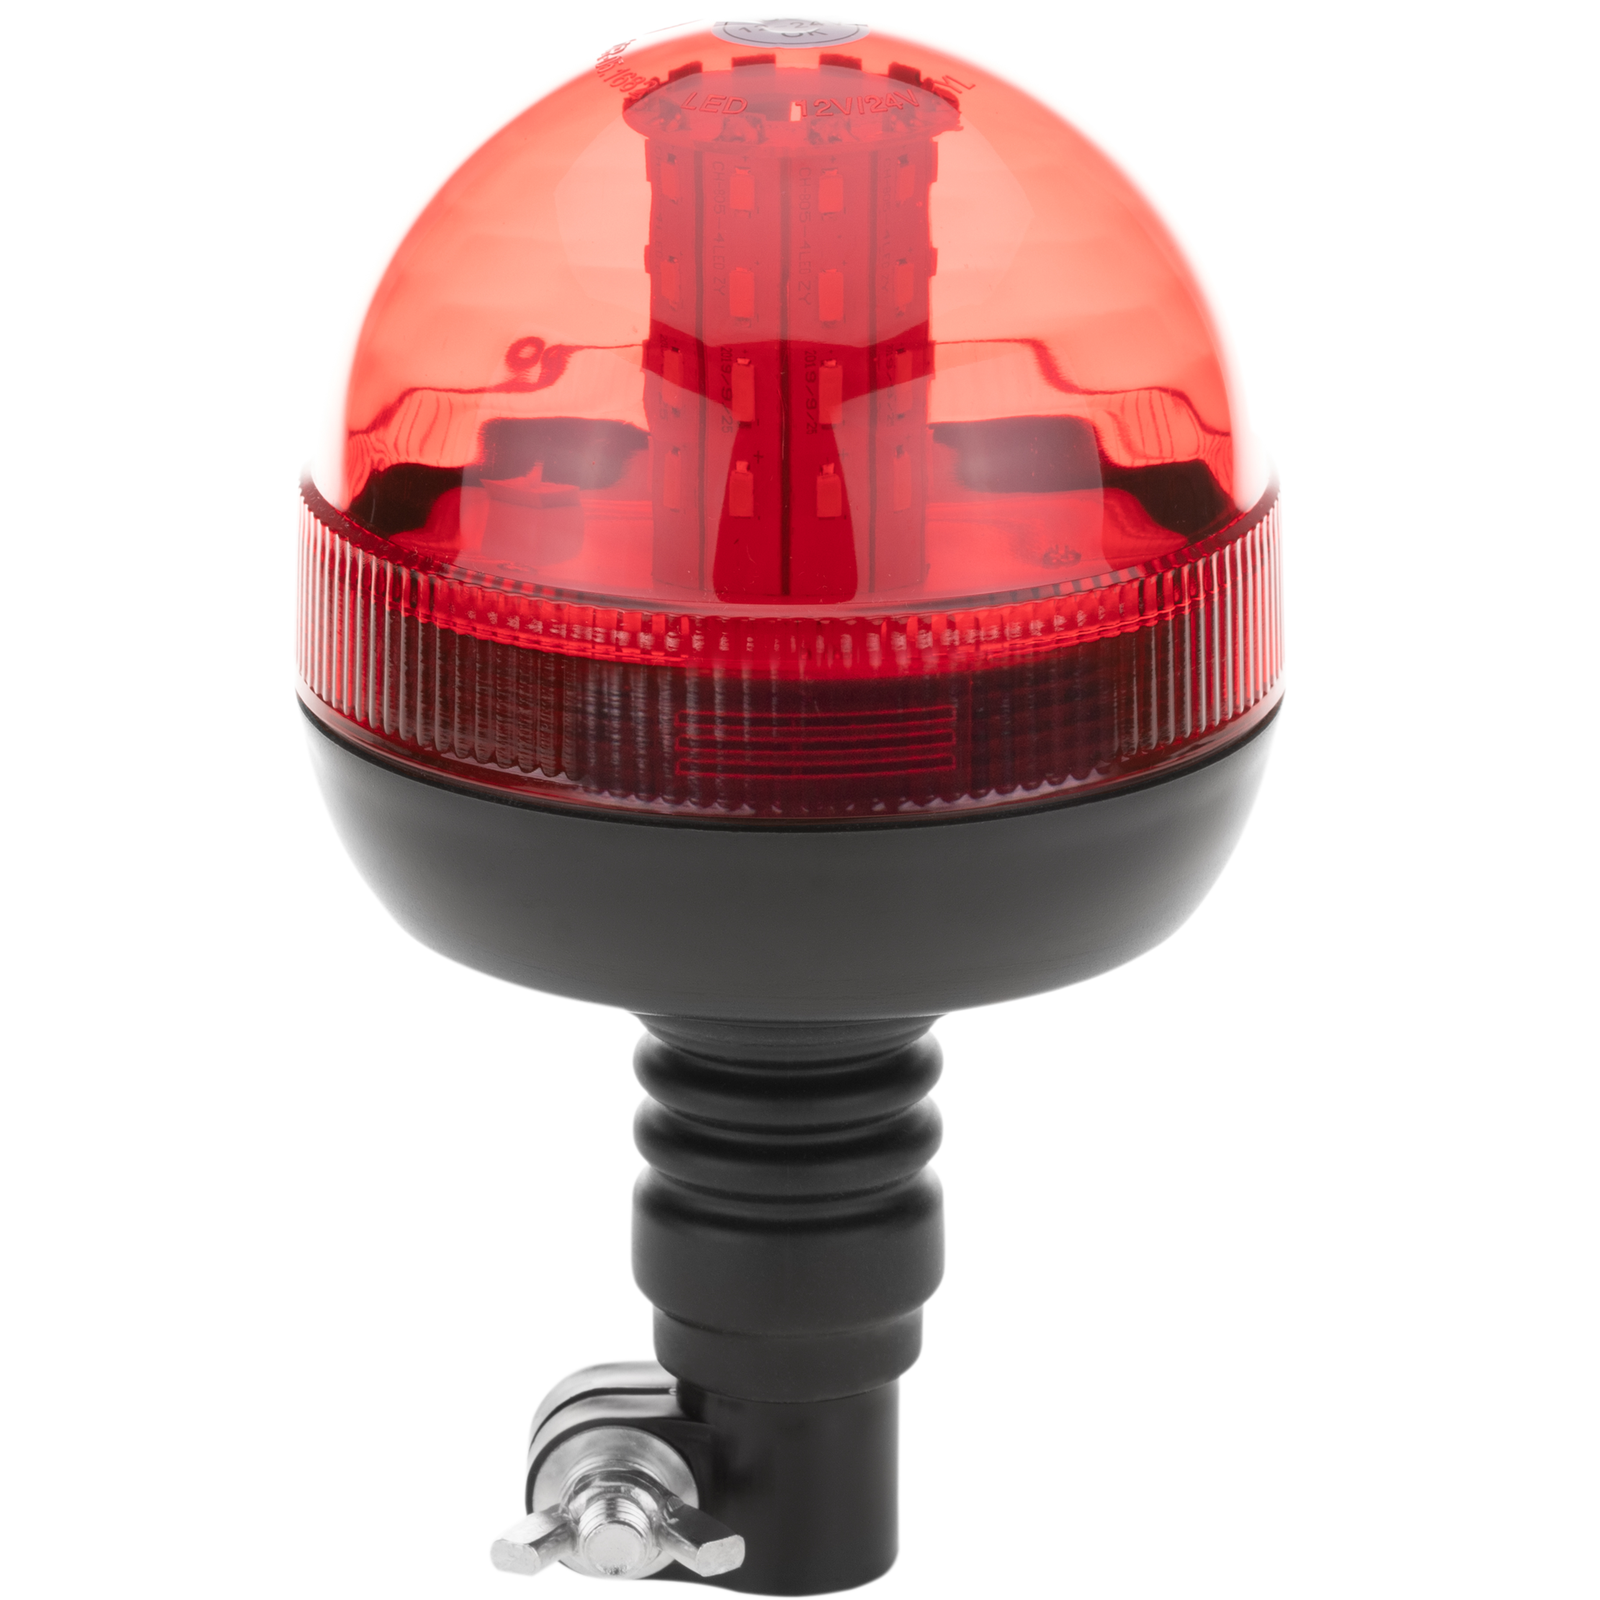 Emergency 12-24 Vdc Rotating Red LED Strobe Light with